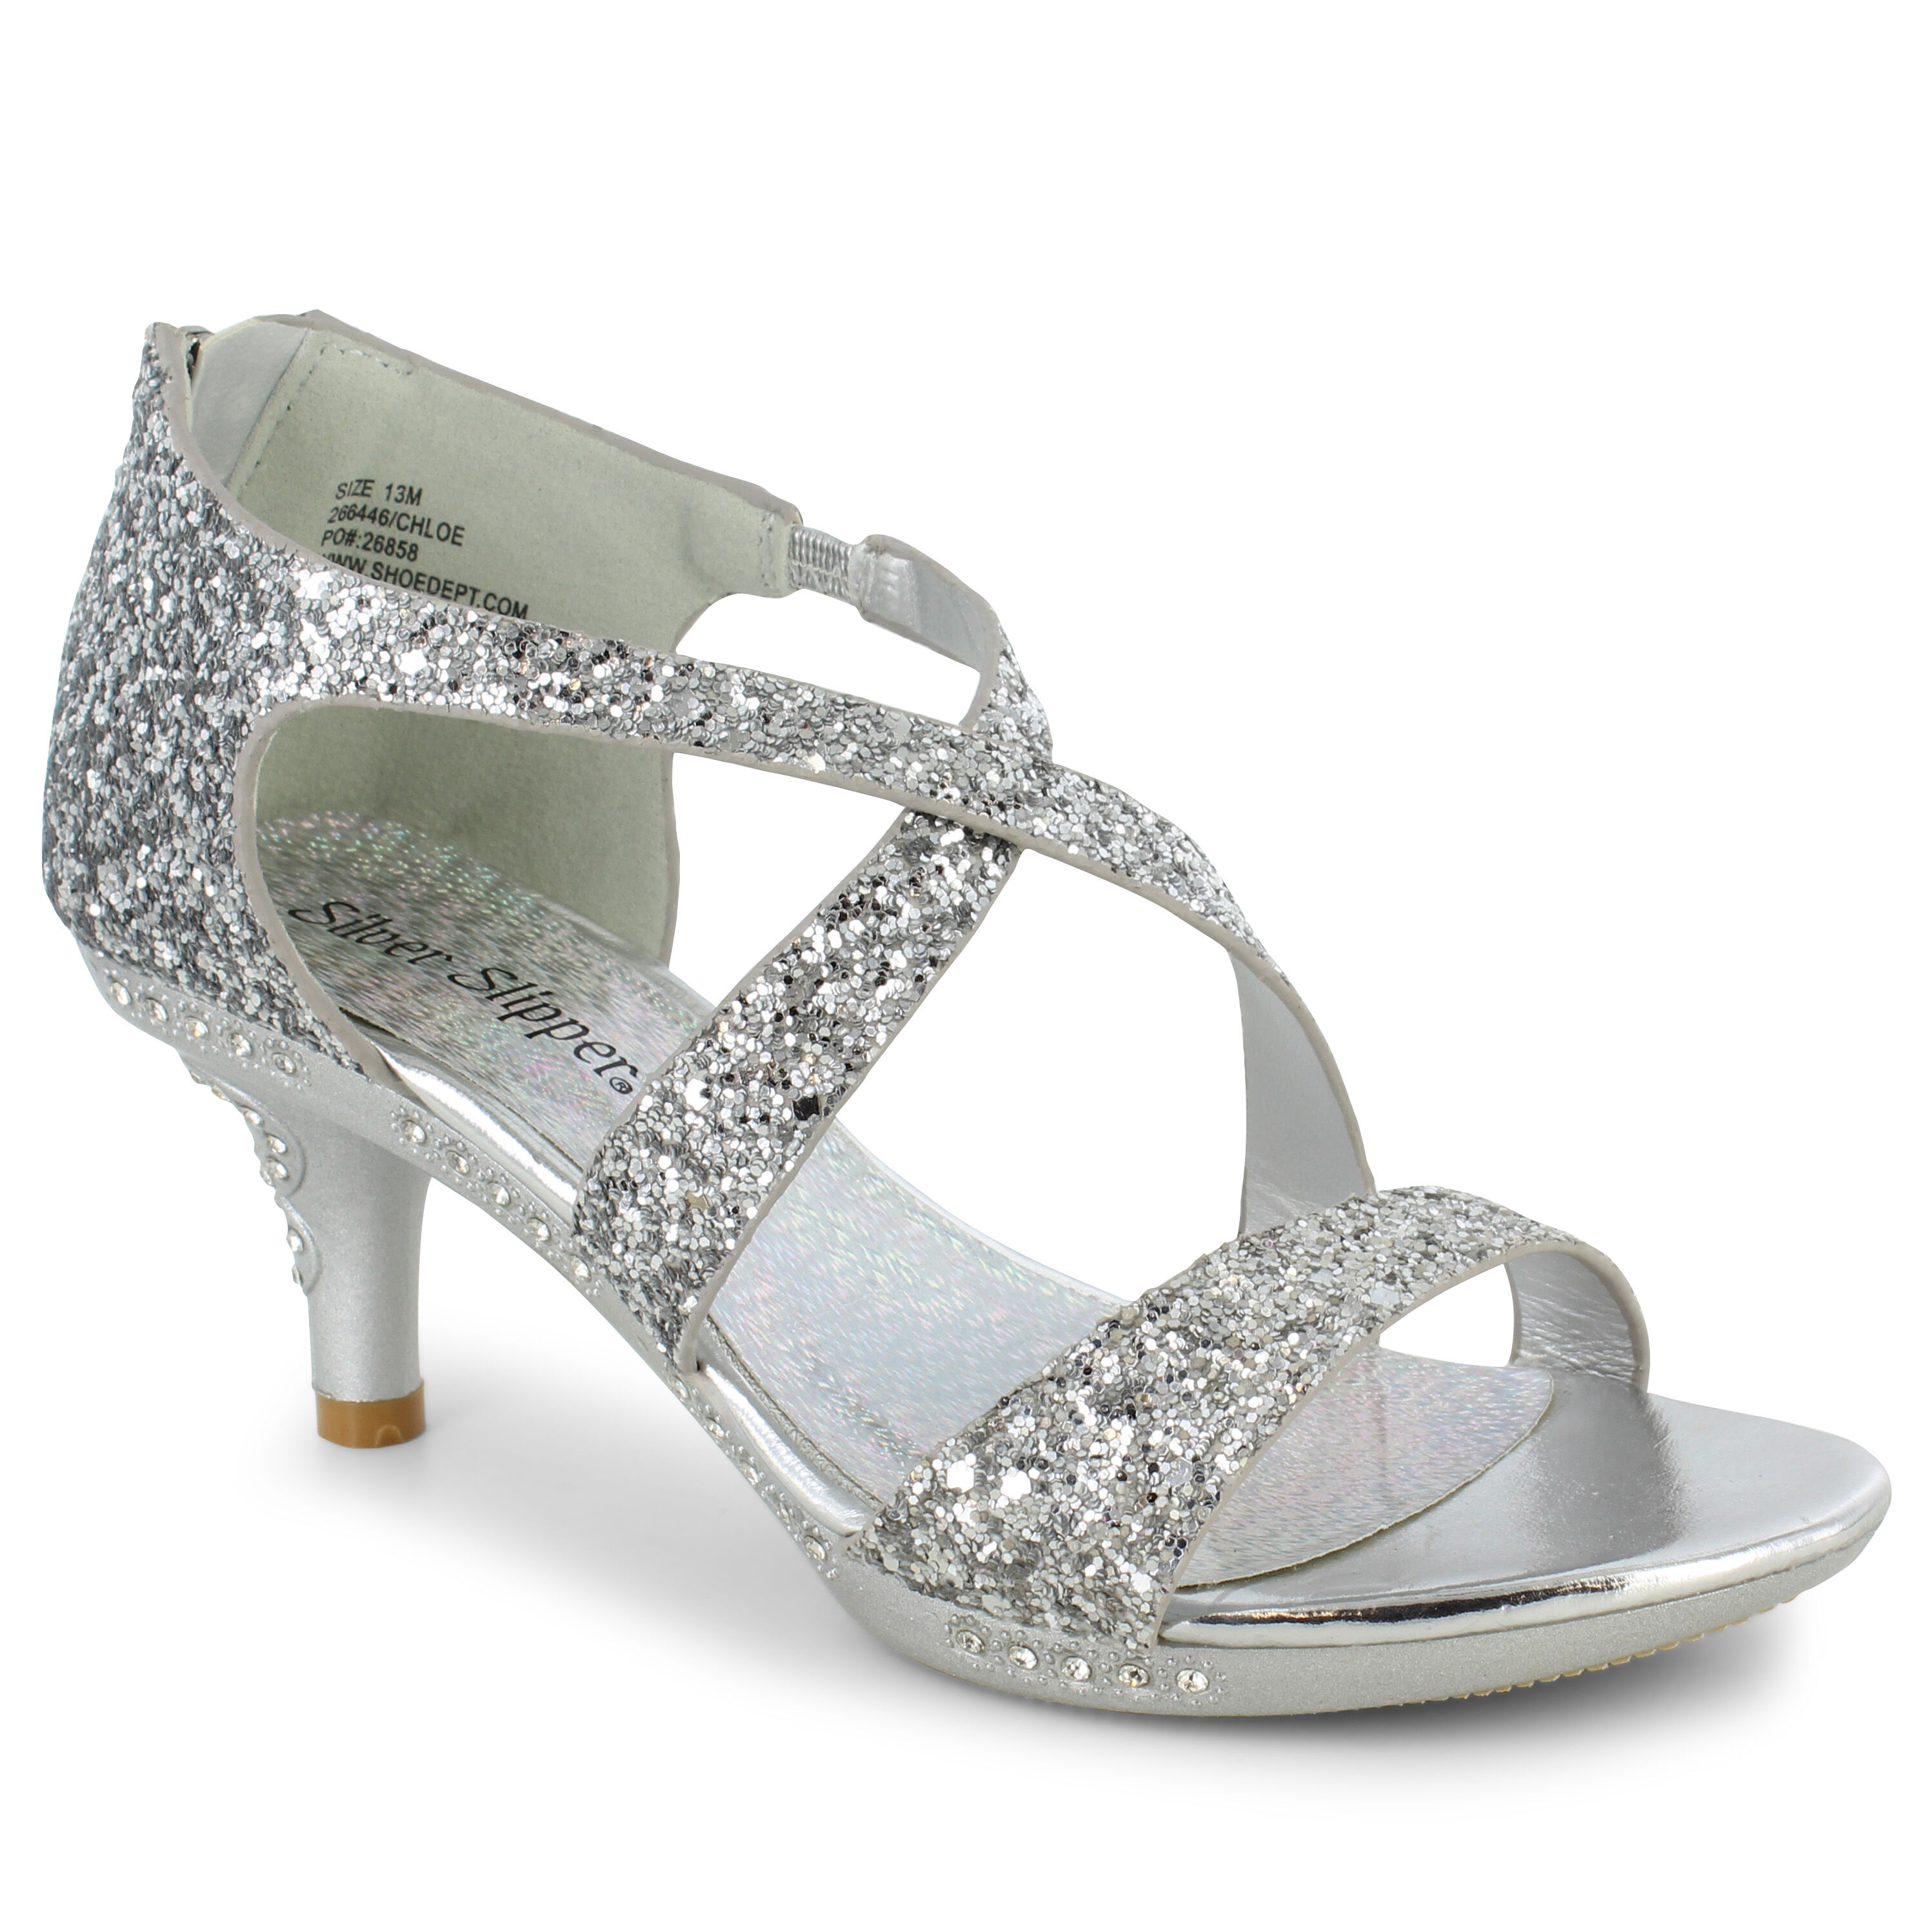 shoe dept silver heels